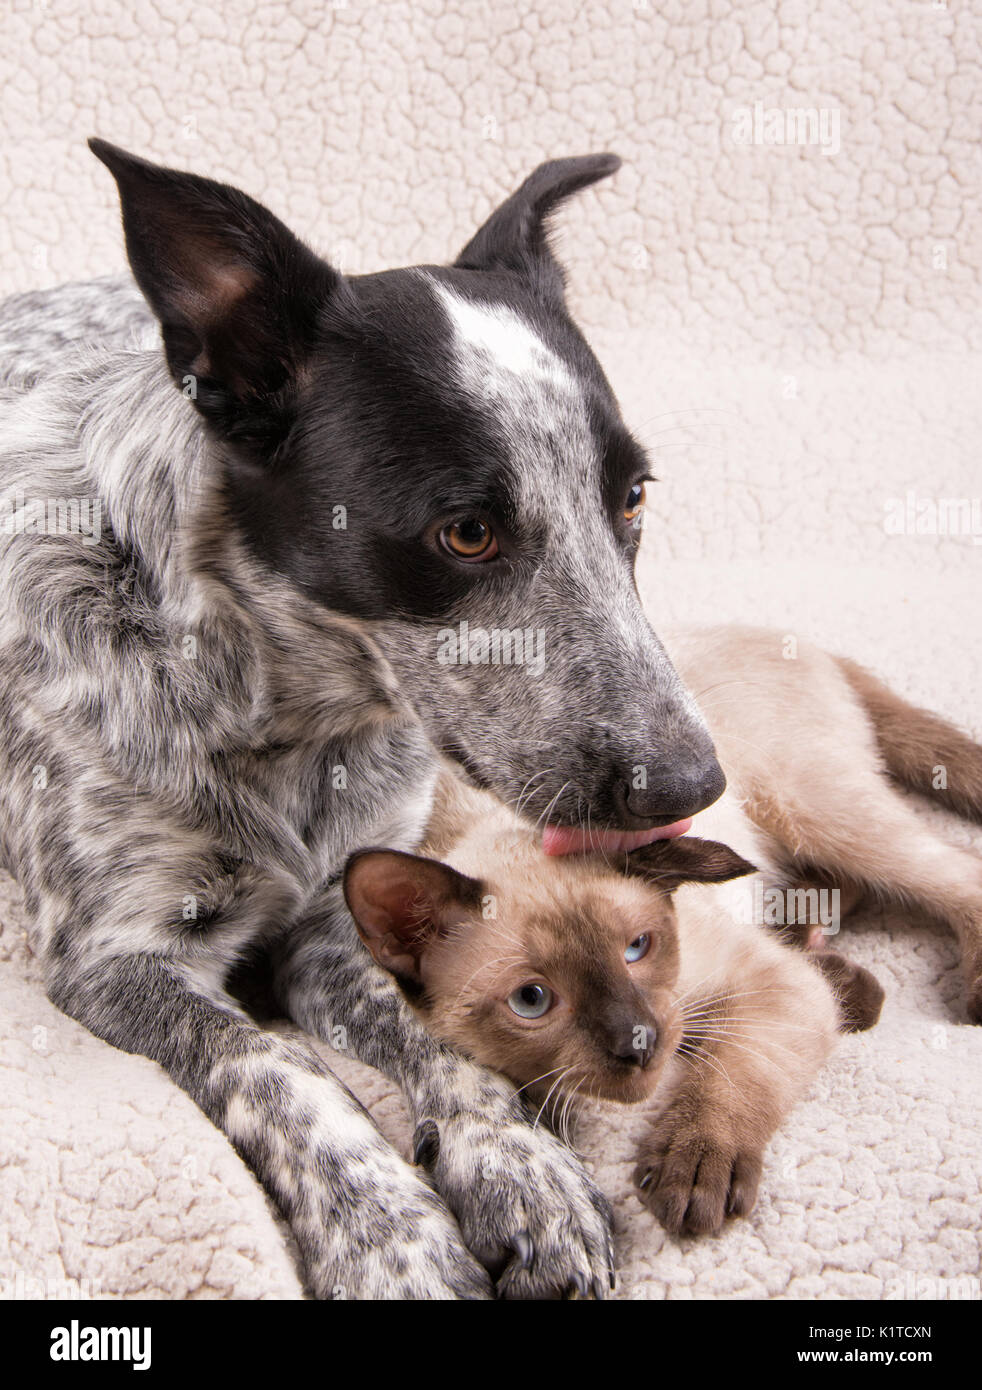 Junge Heeler Hund lecken eine kleine schwarze Katze auf dem Kopf, einem süßen und liebevollen Augenblick zwischen tierischen Freunde Stockfoto